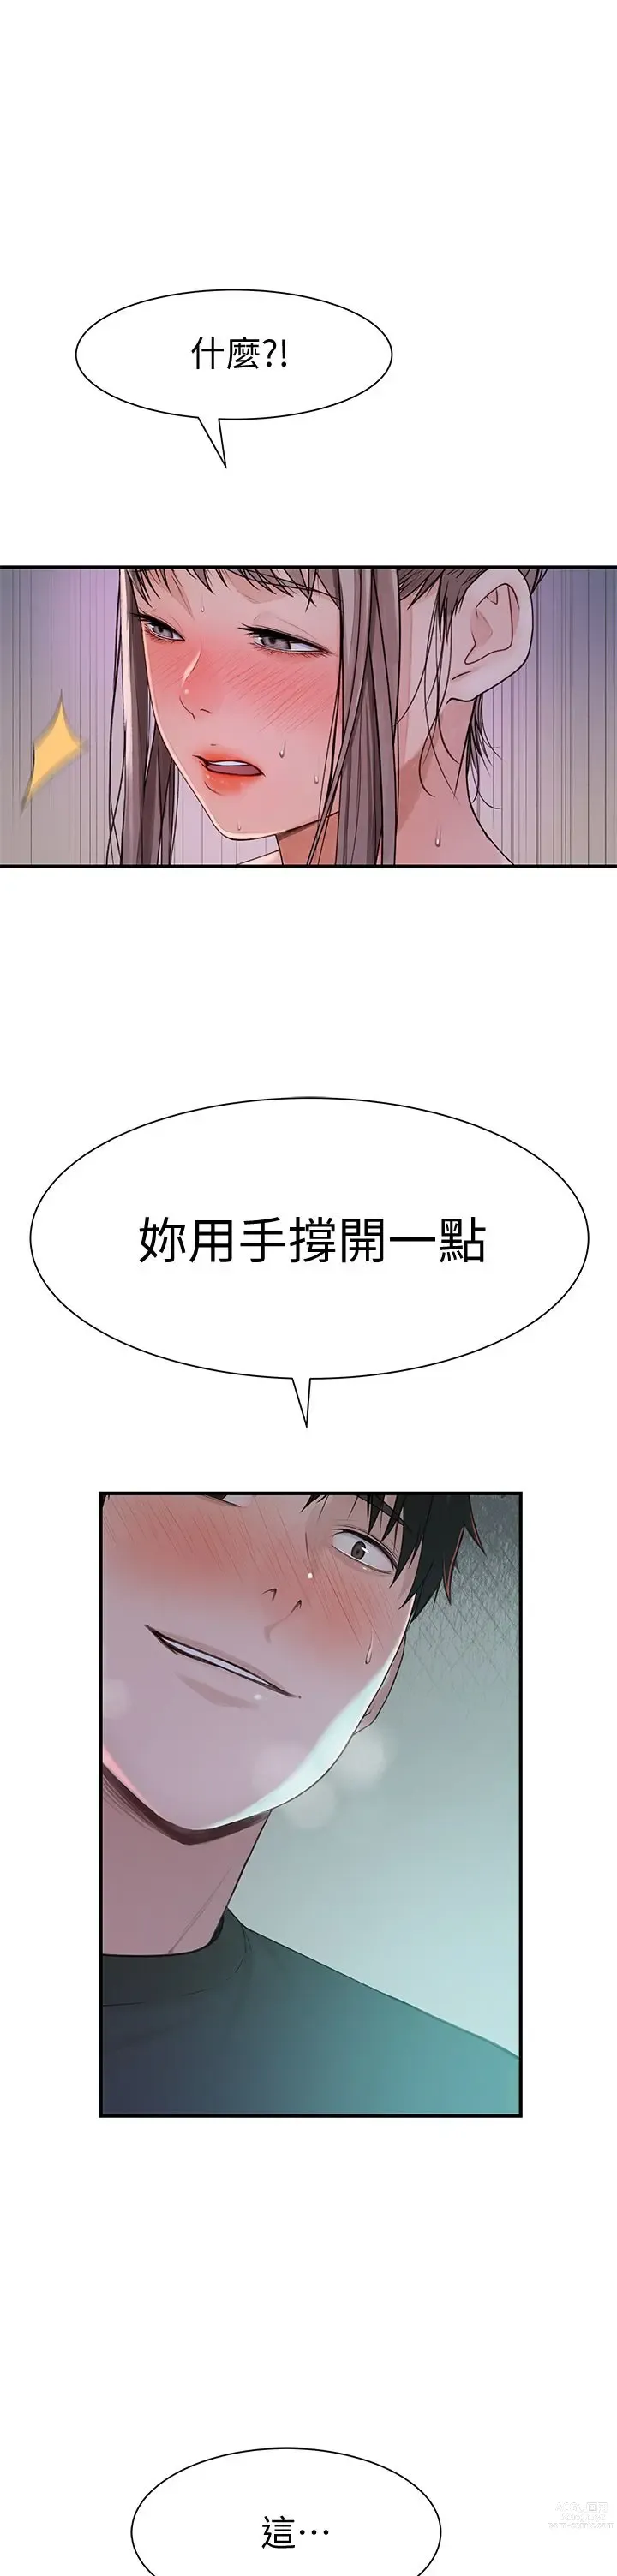 Page 8 of manga 我们的特殊关系／Between Us [中文] [已完结]（下）